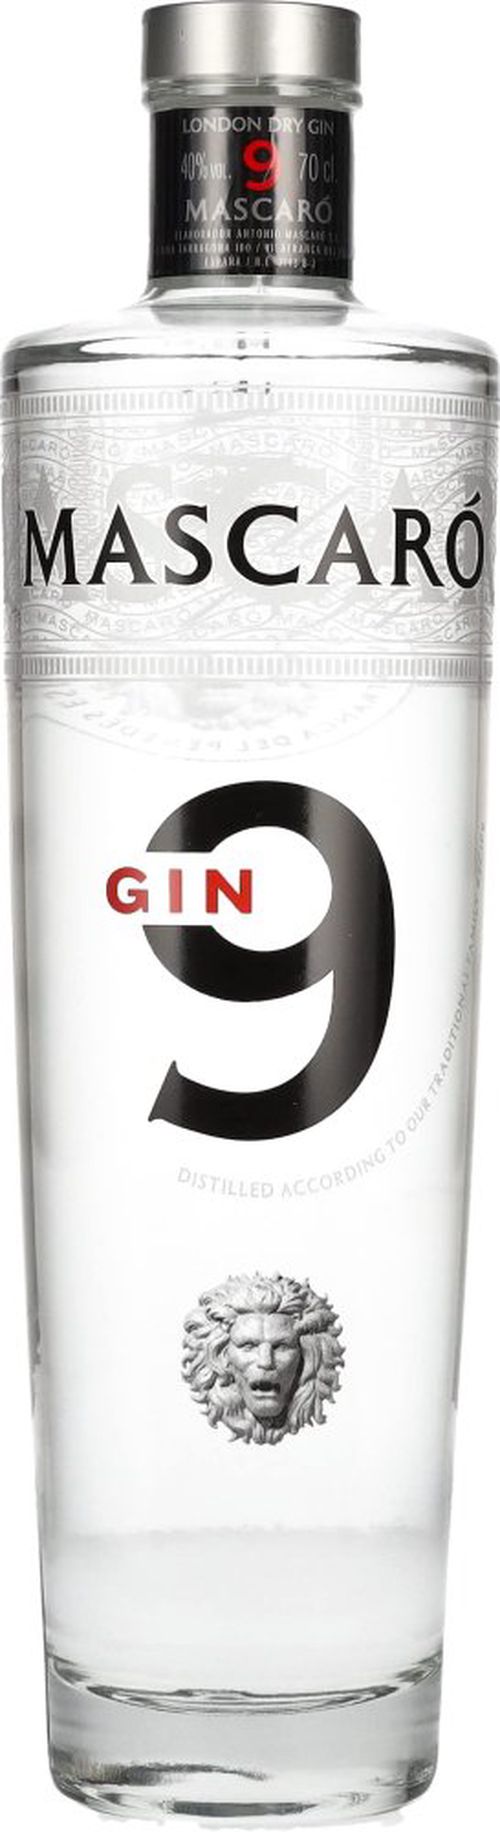 Mascaró Gin 9 0,7l 40%